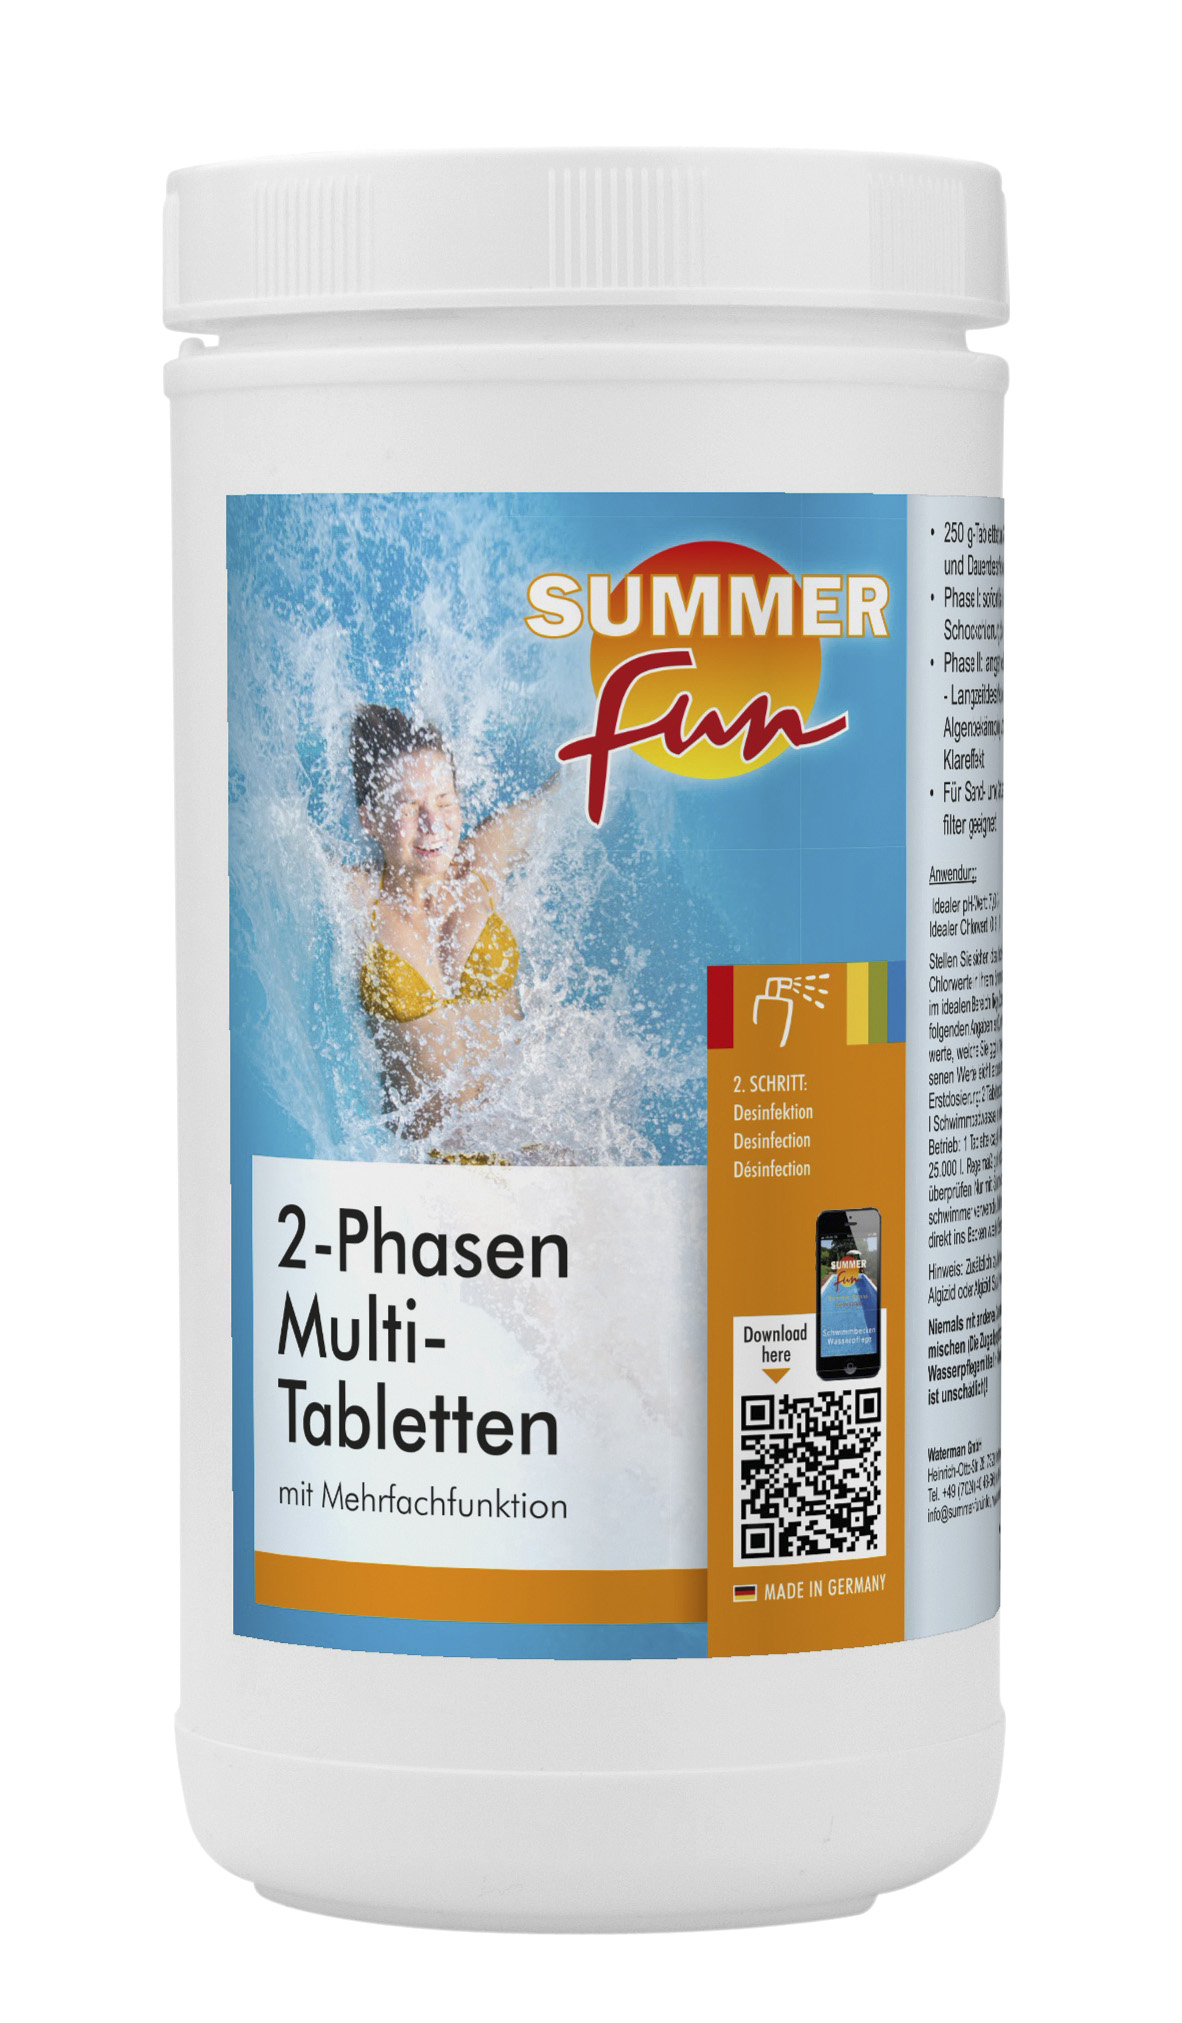 Summer fun 2-Phasen Multi-Tablette, 1 kg